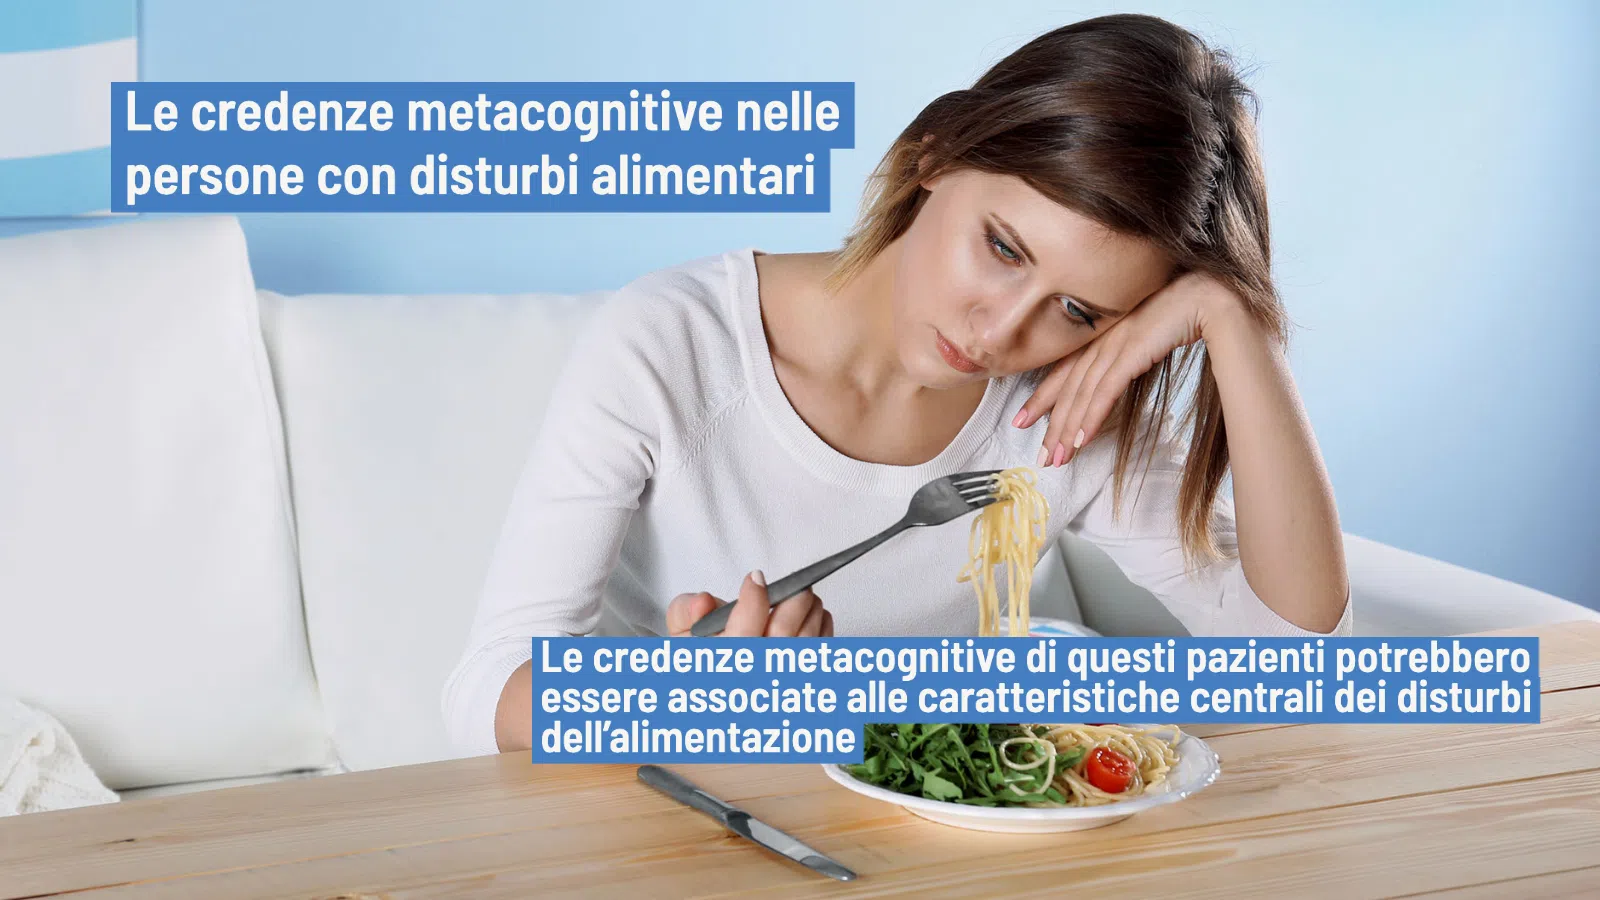 Disturbi alimentari: credenze metacognitive e caratteristiche alimentari